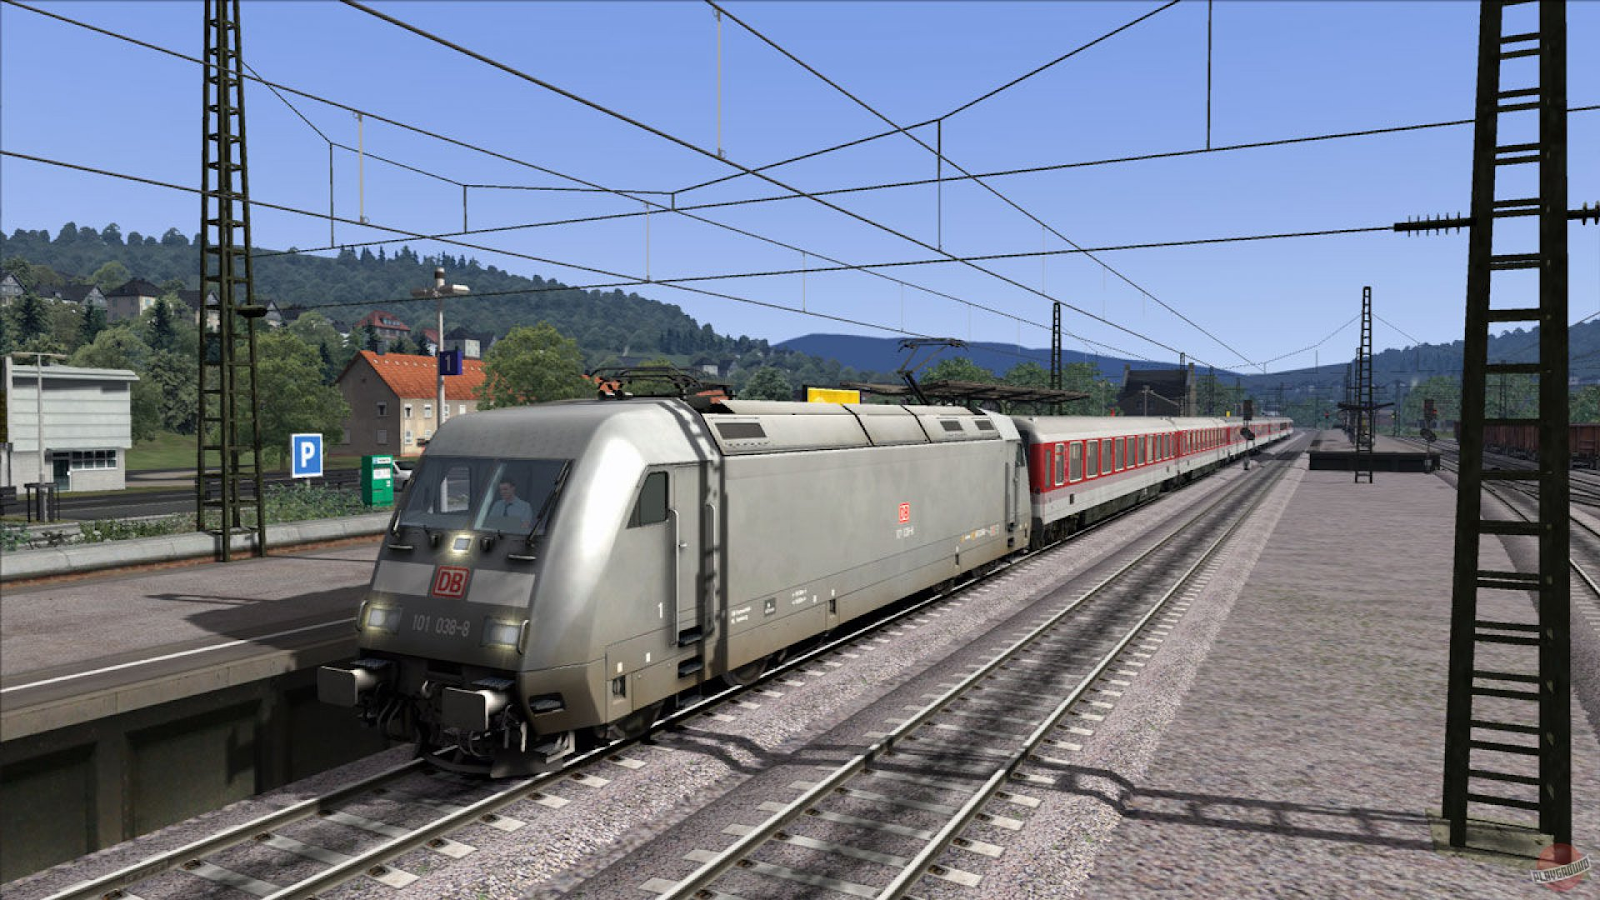 Игра 4 поезда. Railworks 3 - Train Simulator 2012 Deluxe. Railworks 3 Train Simulator 2012. Rail Simulator 2012. Railworks 3 Train Simulator.